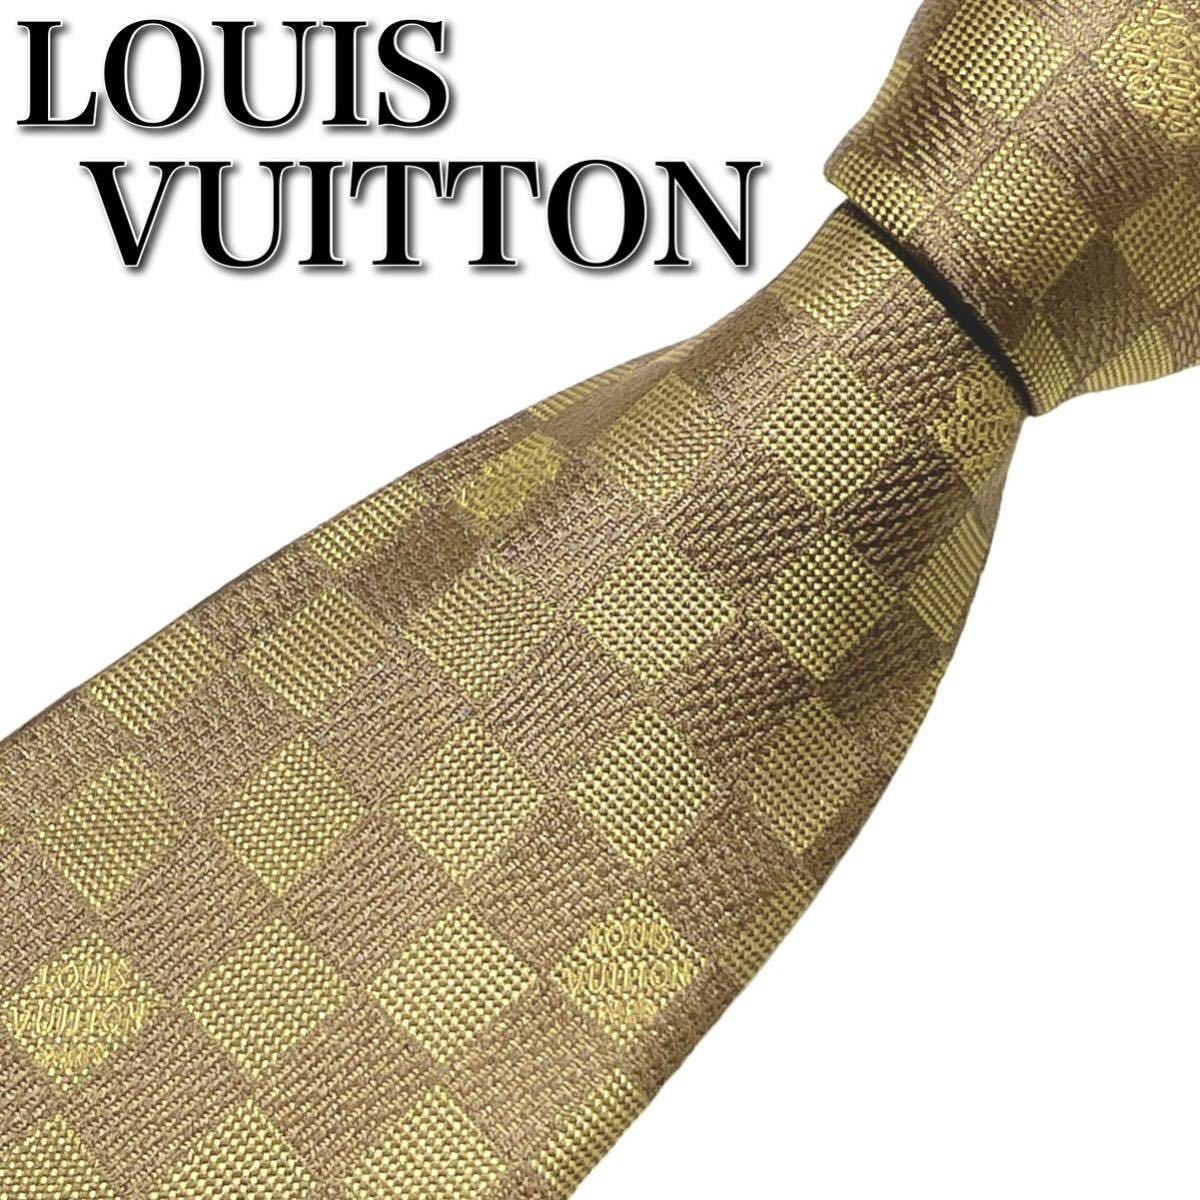 ルイヴィトン LOUISVUITTON ネクタイ ダミエ シルク100% 絹 イタリア ビジネス ロゴ イエロー 黄色 メンズ